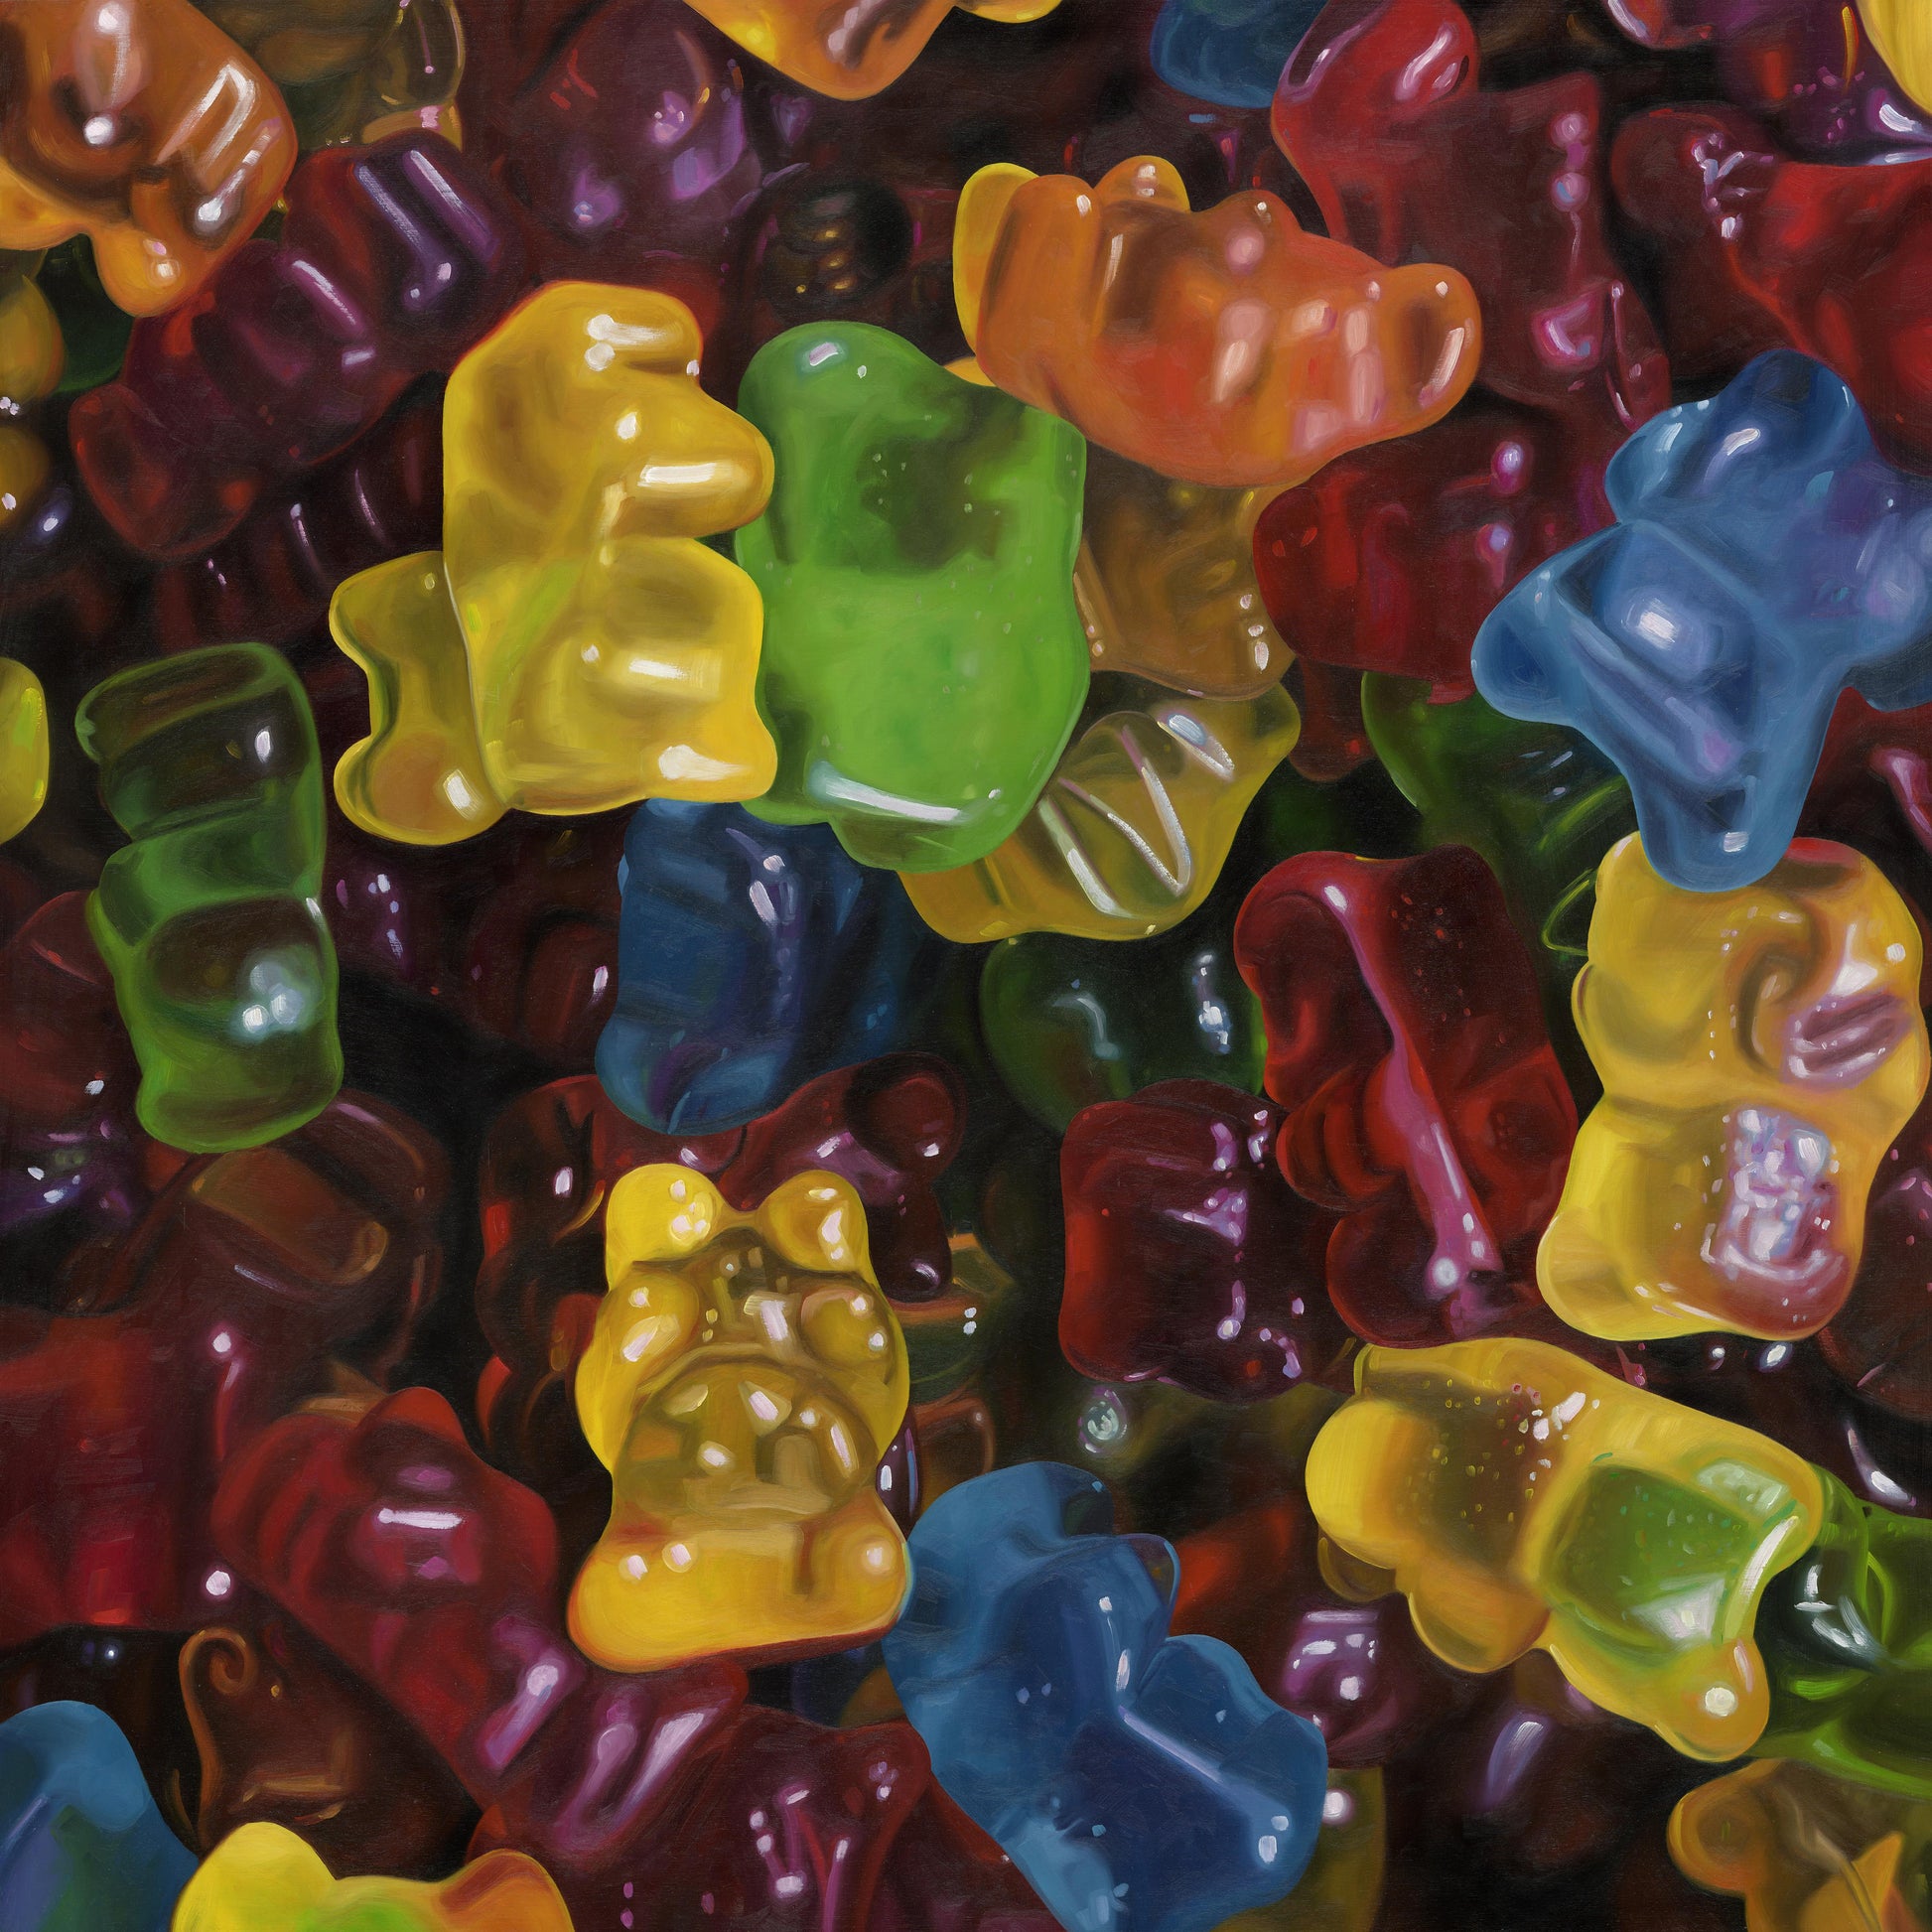 The original painting “Gummy Bears" by Hannah Kilby from Hannah Michelle Studios.